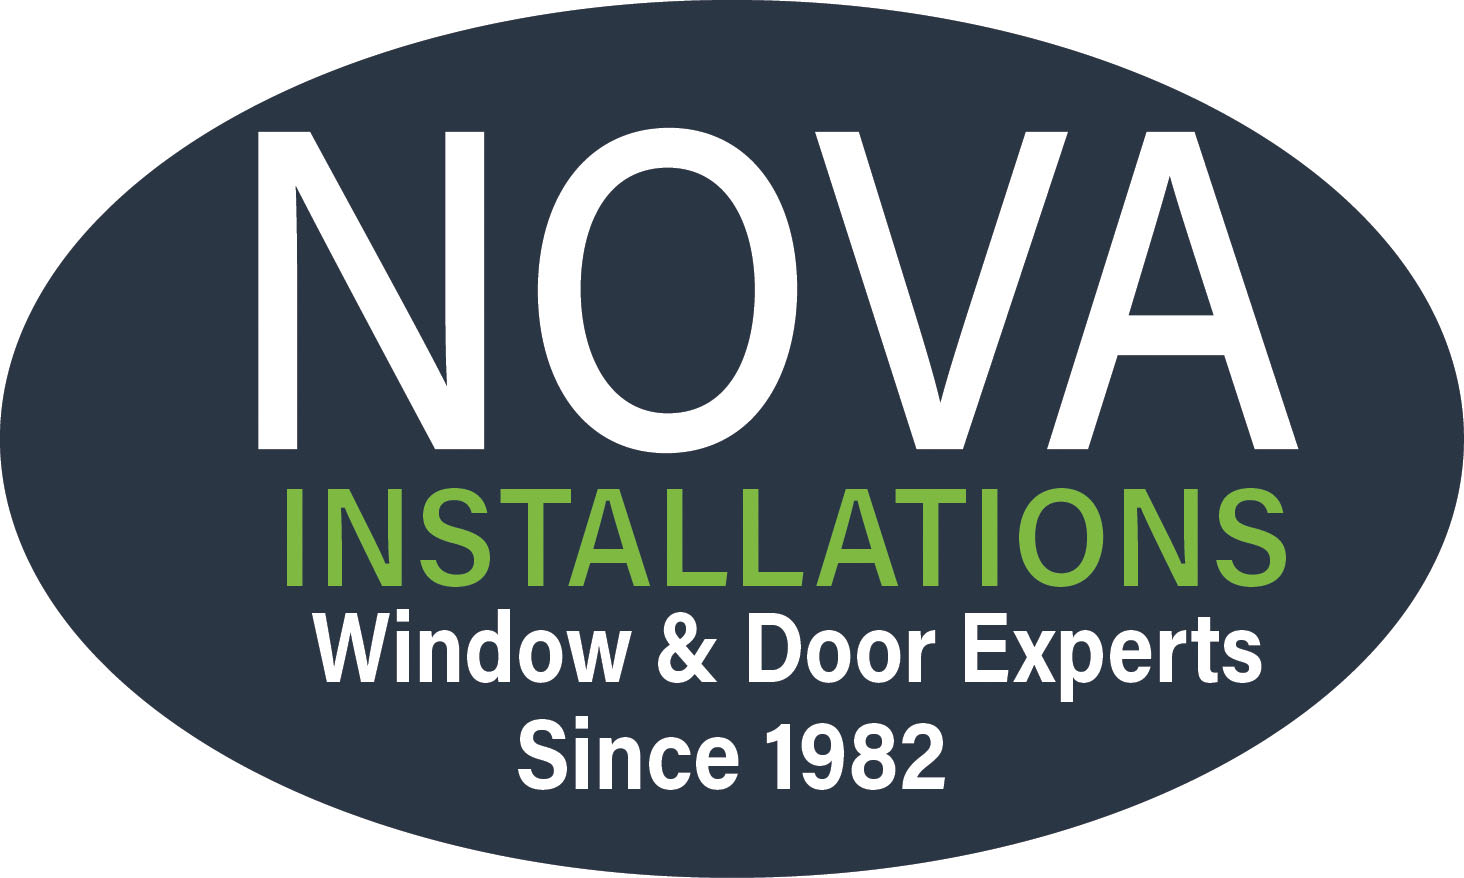 Andersen Windows from Nova Installations in Chantilly, VA | Andersen Windows Certified Contractor